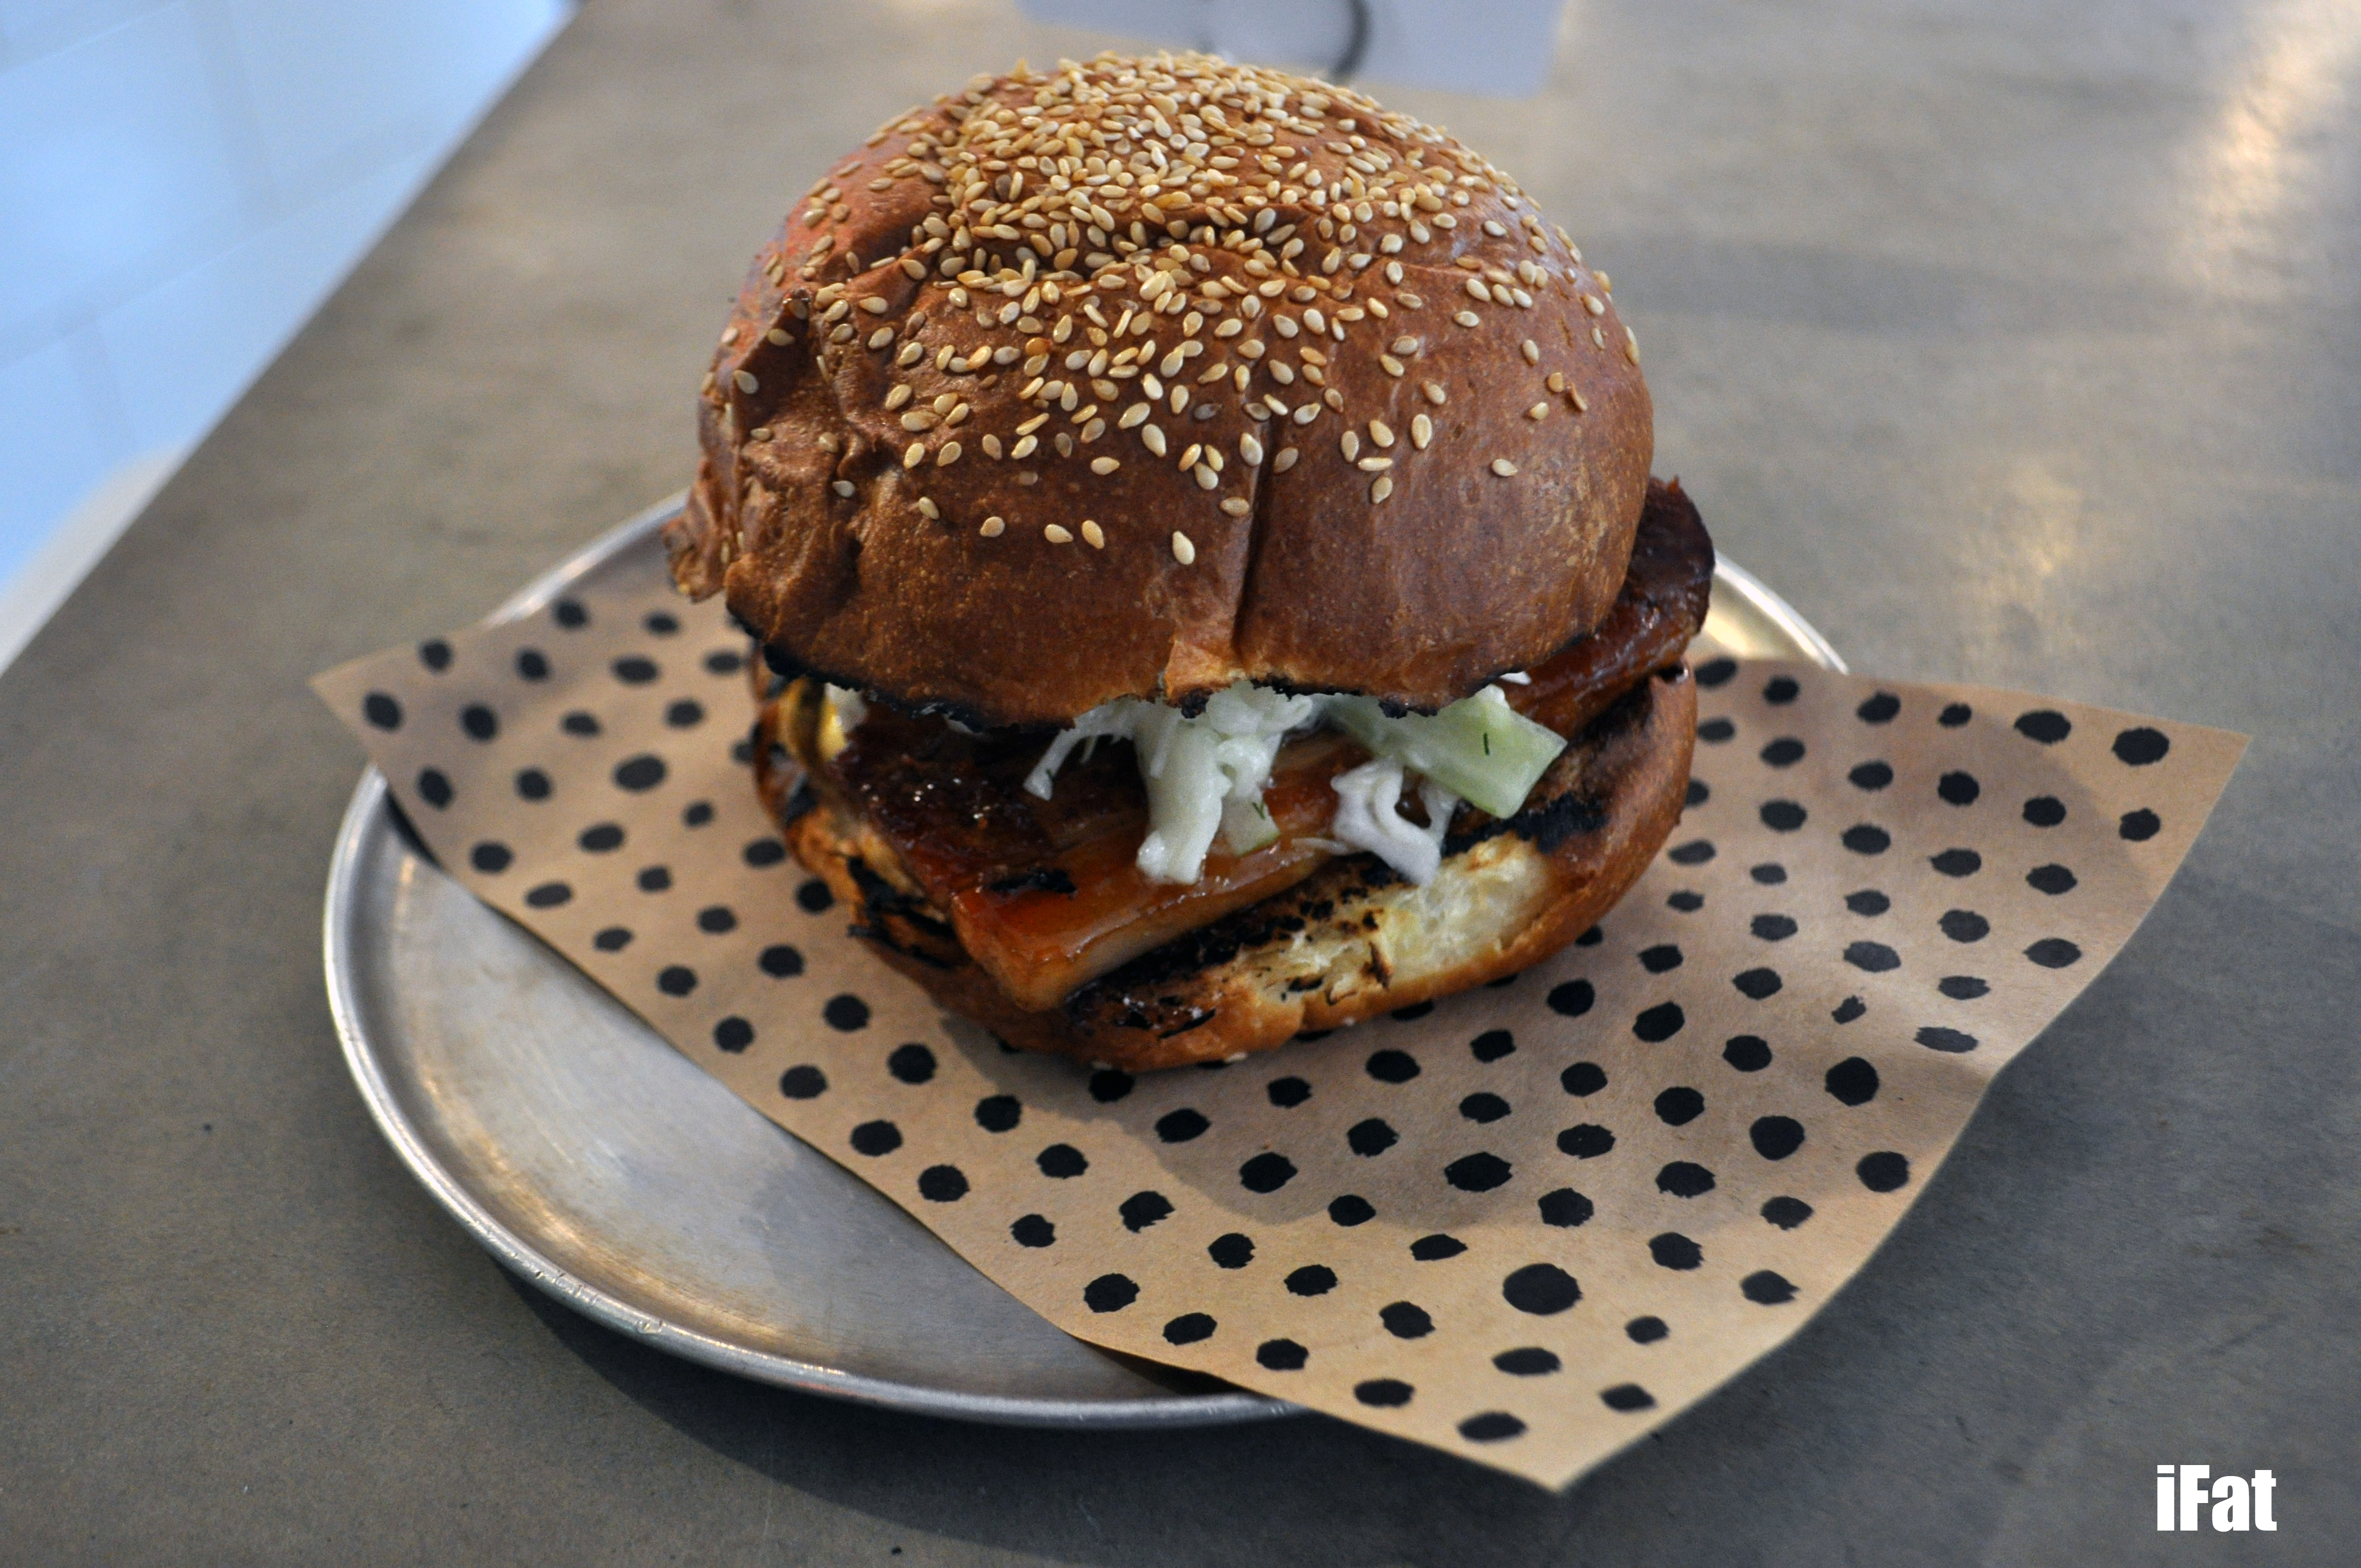 Pork Belly Burger by Chur Burger